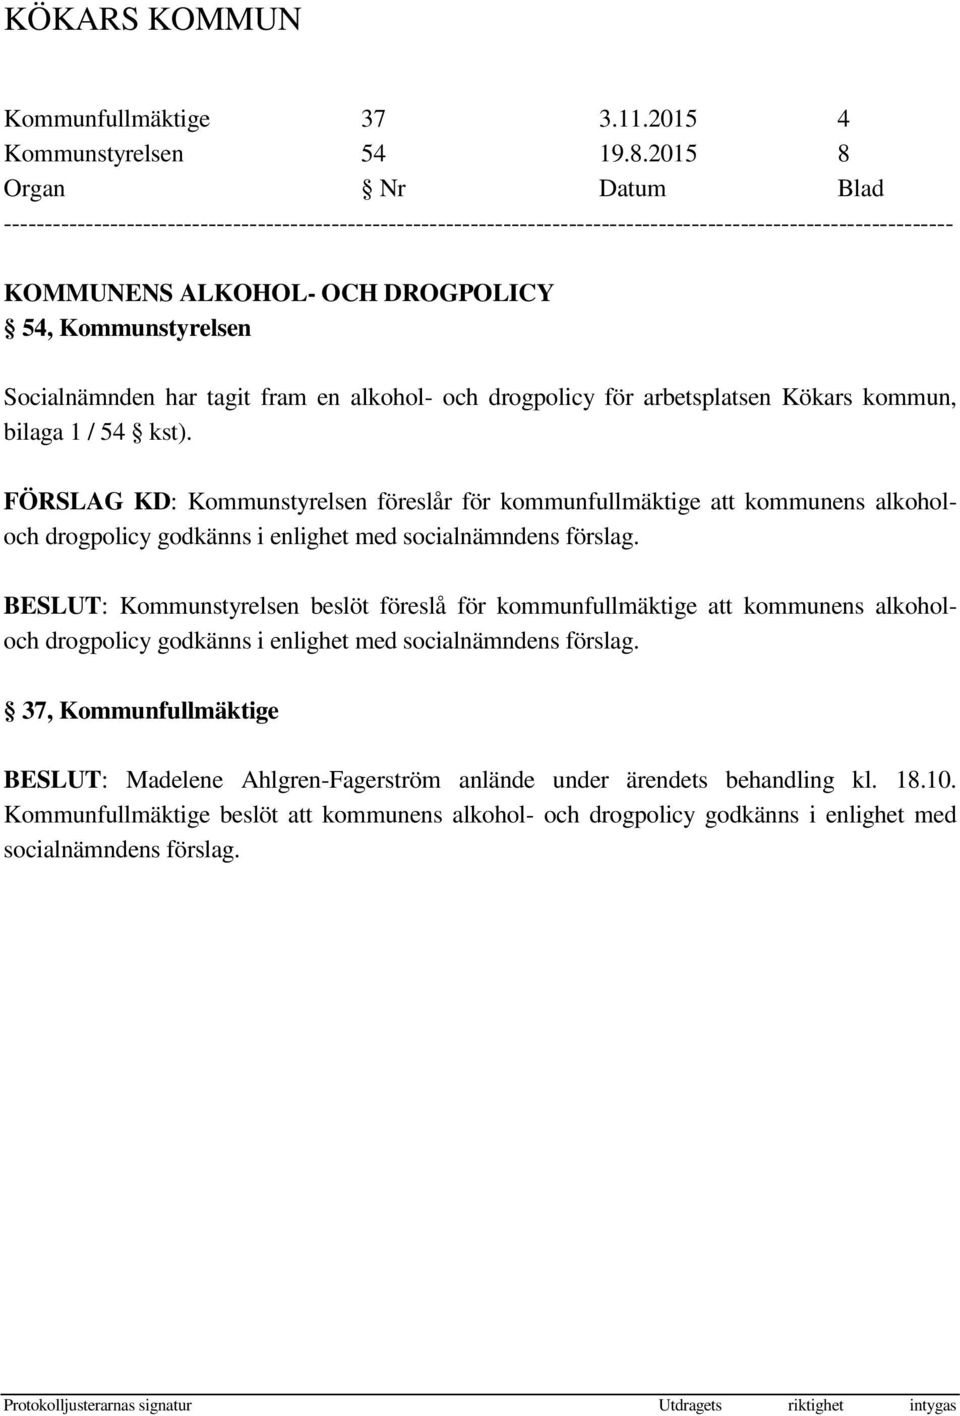 Socialnämnden har tagit fram en alkohol- och drogpolicy för arbetsplatsen Kökars kommun, bilaga 1 / 54 kst).